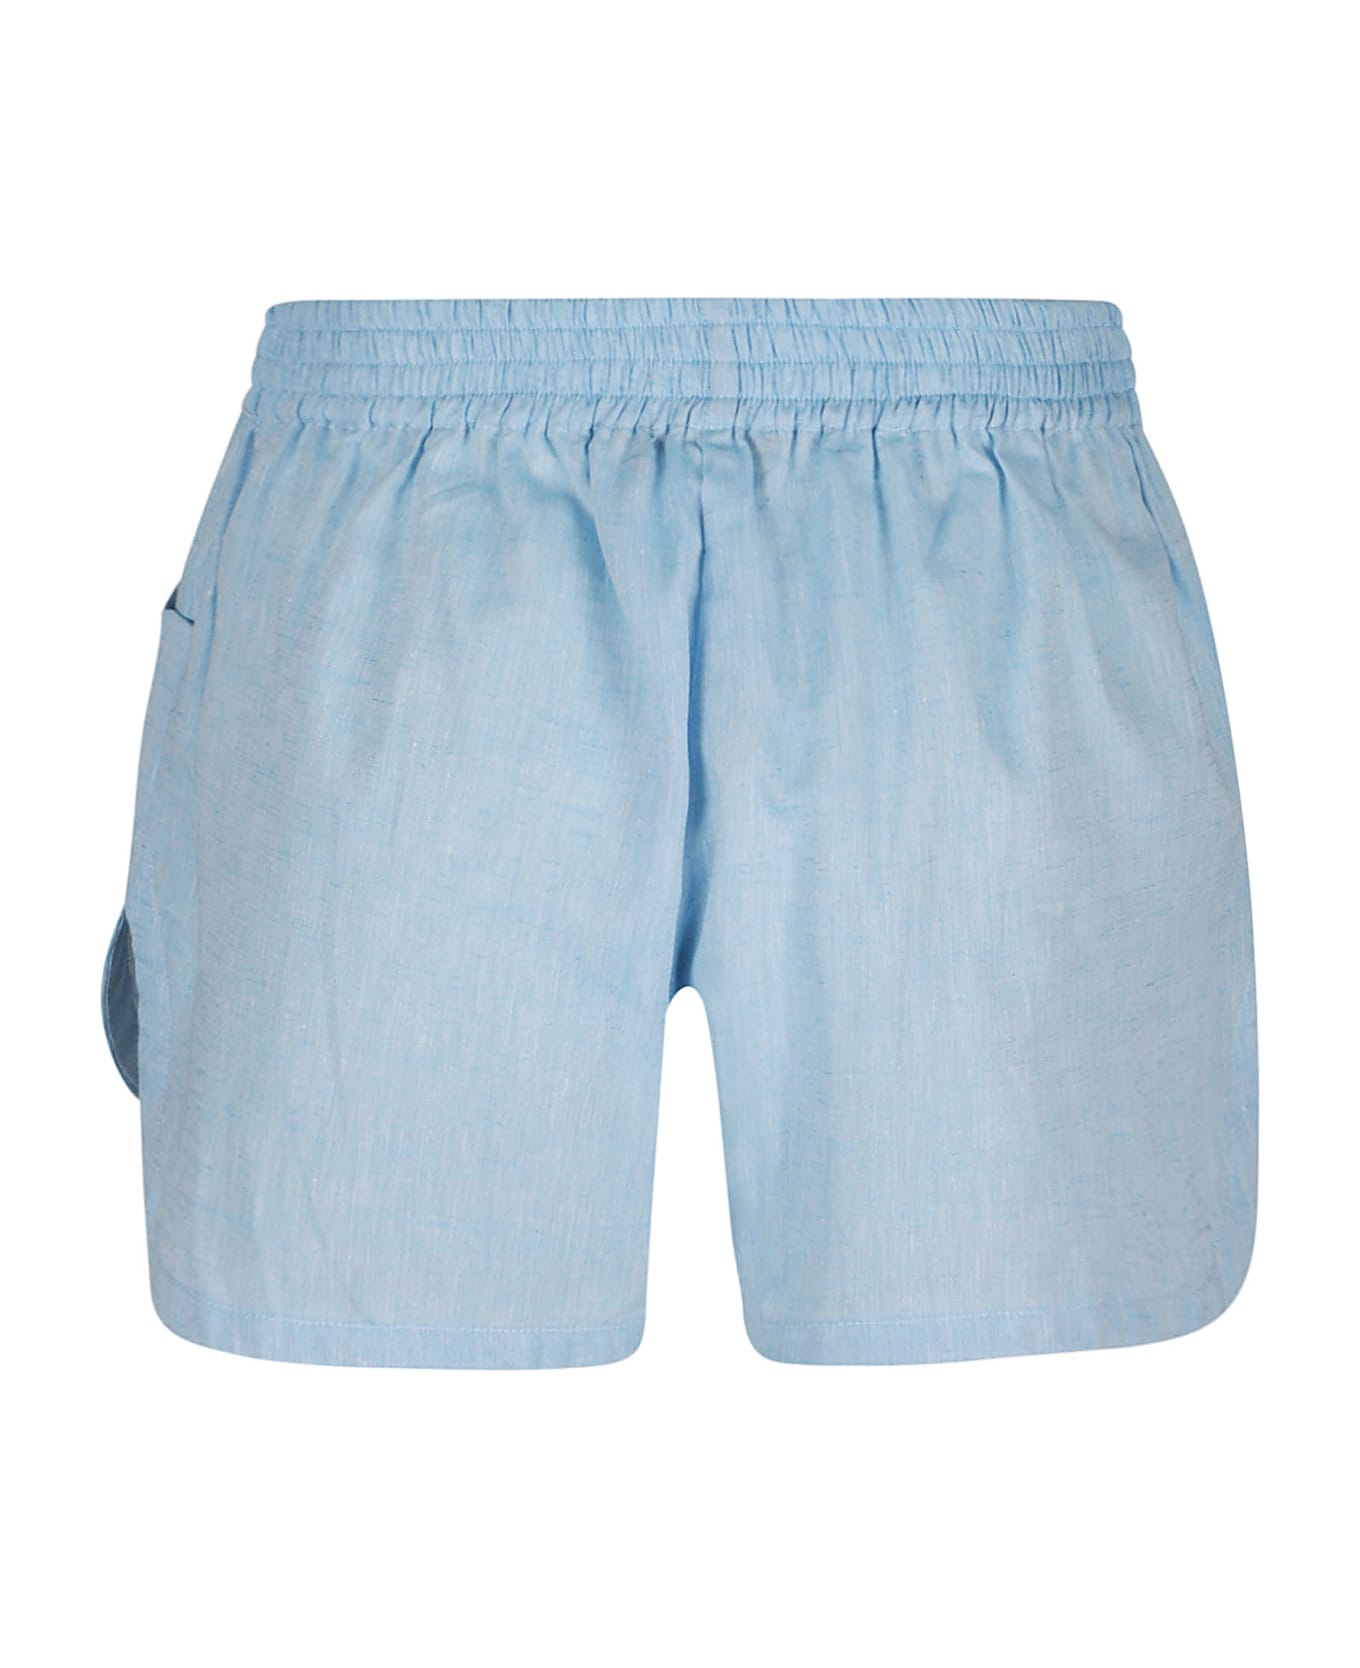 Ermanno Scervino Floral Shorts - Azure